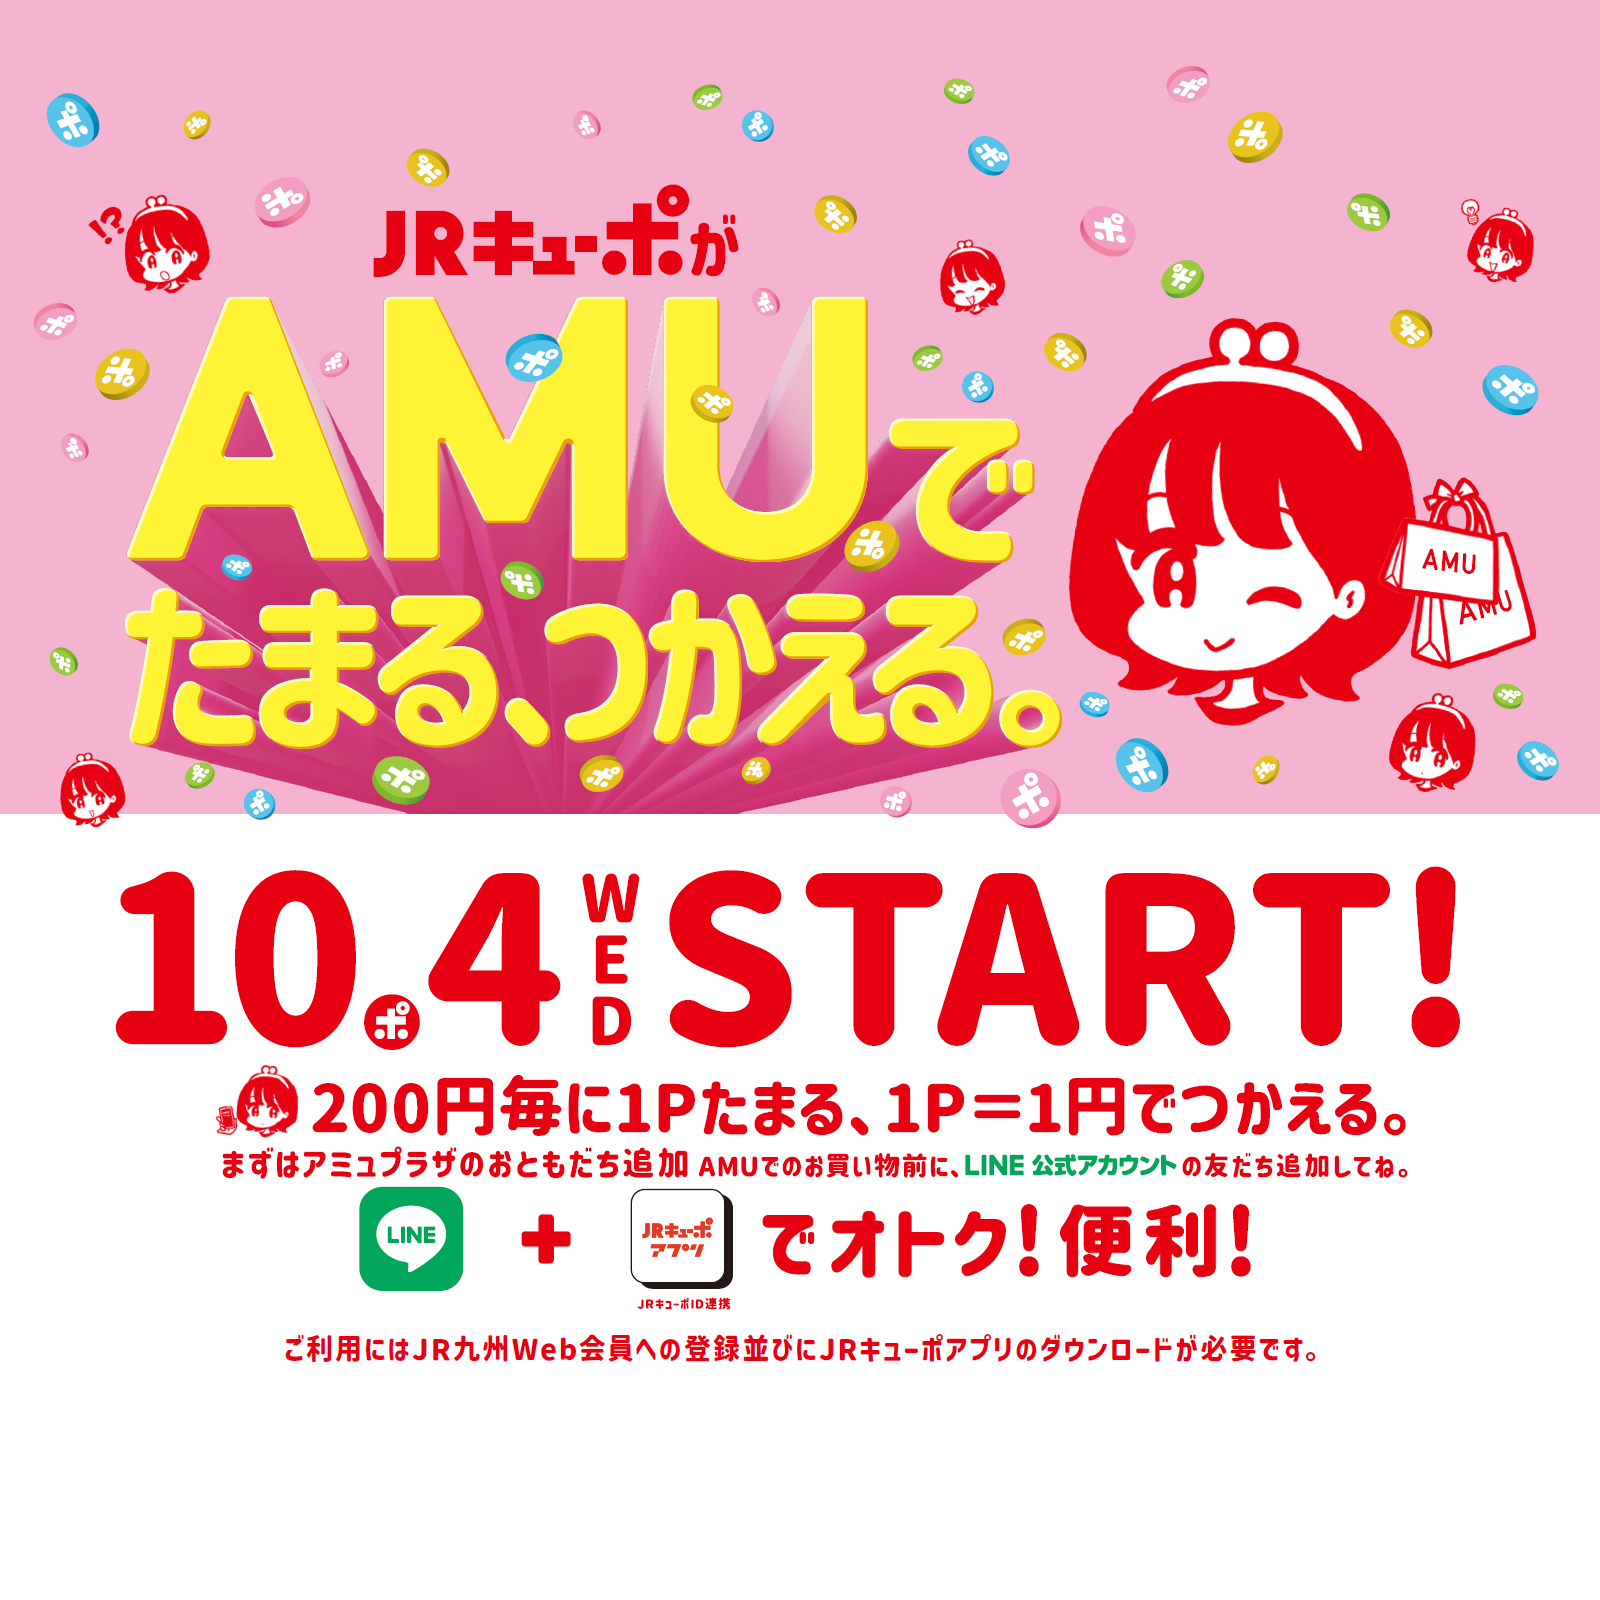 【10/4（水）からアミュでもJRキューポがたまる！つかえる！】JRキューポアプリがアミュプラザくまもとで利用可能に！LINE連携で500円分のJRキューポプレゼントキャンペーンも開催！